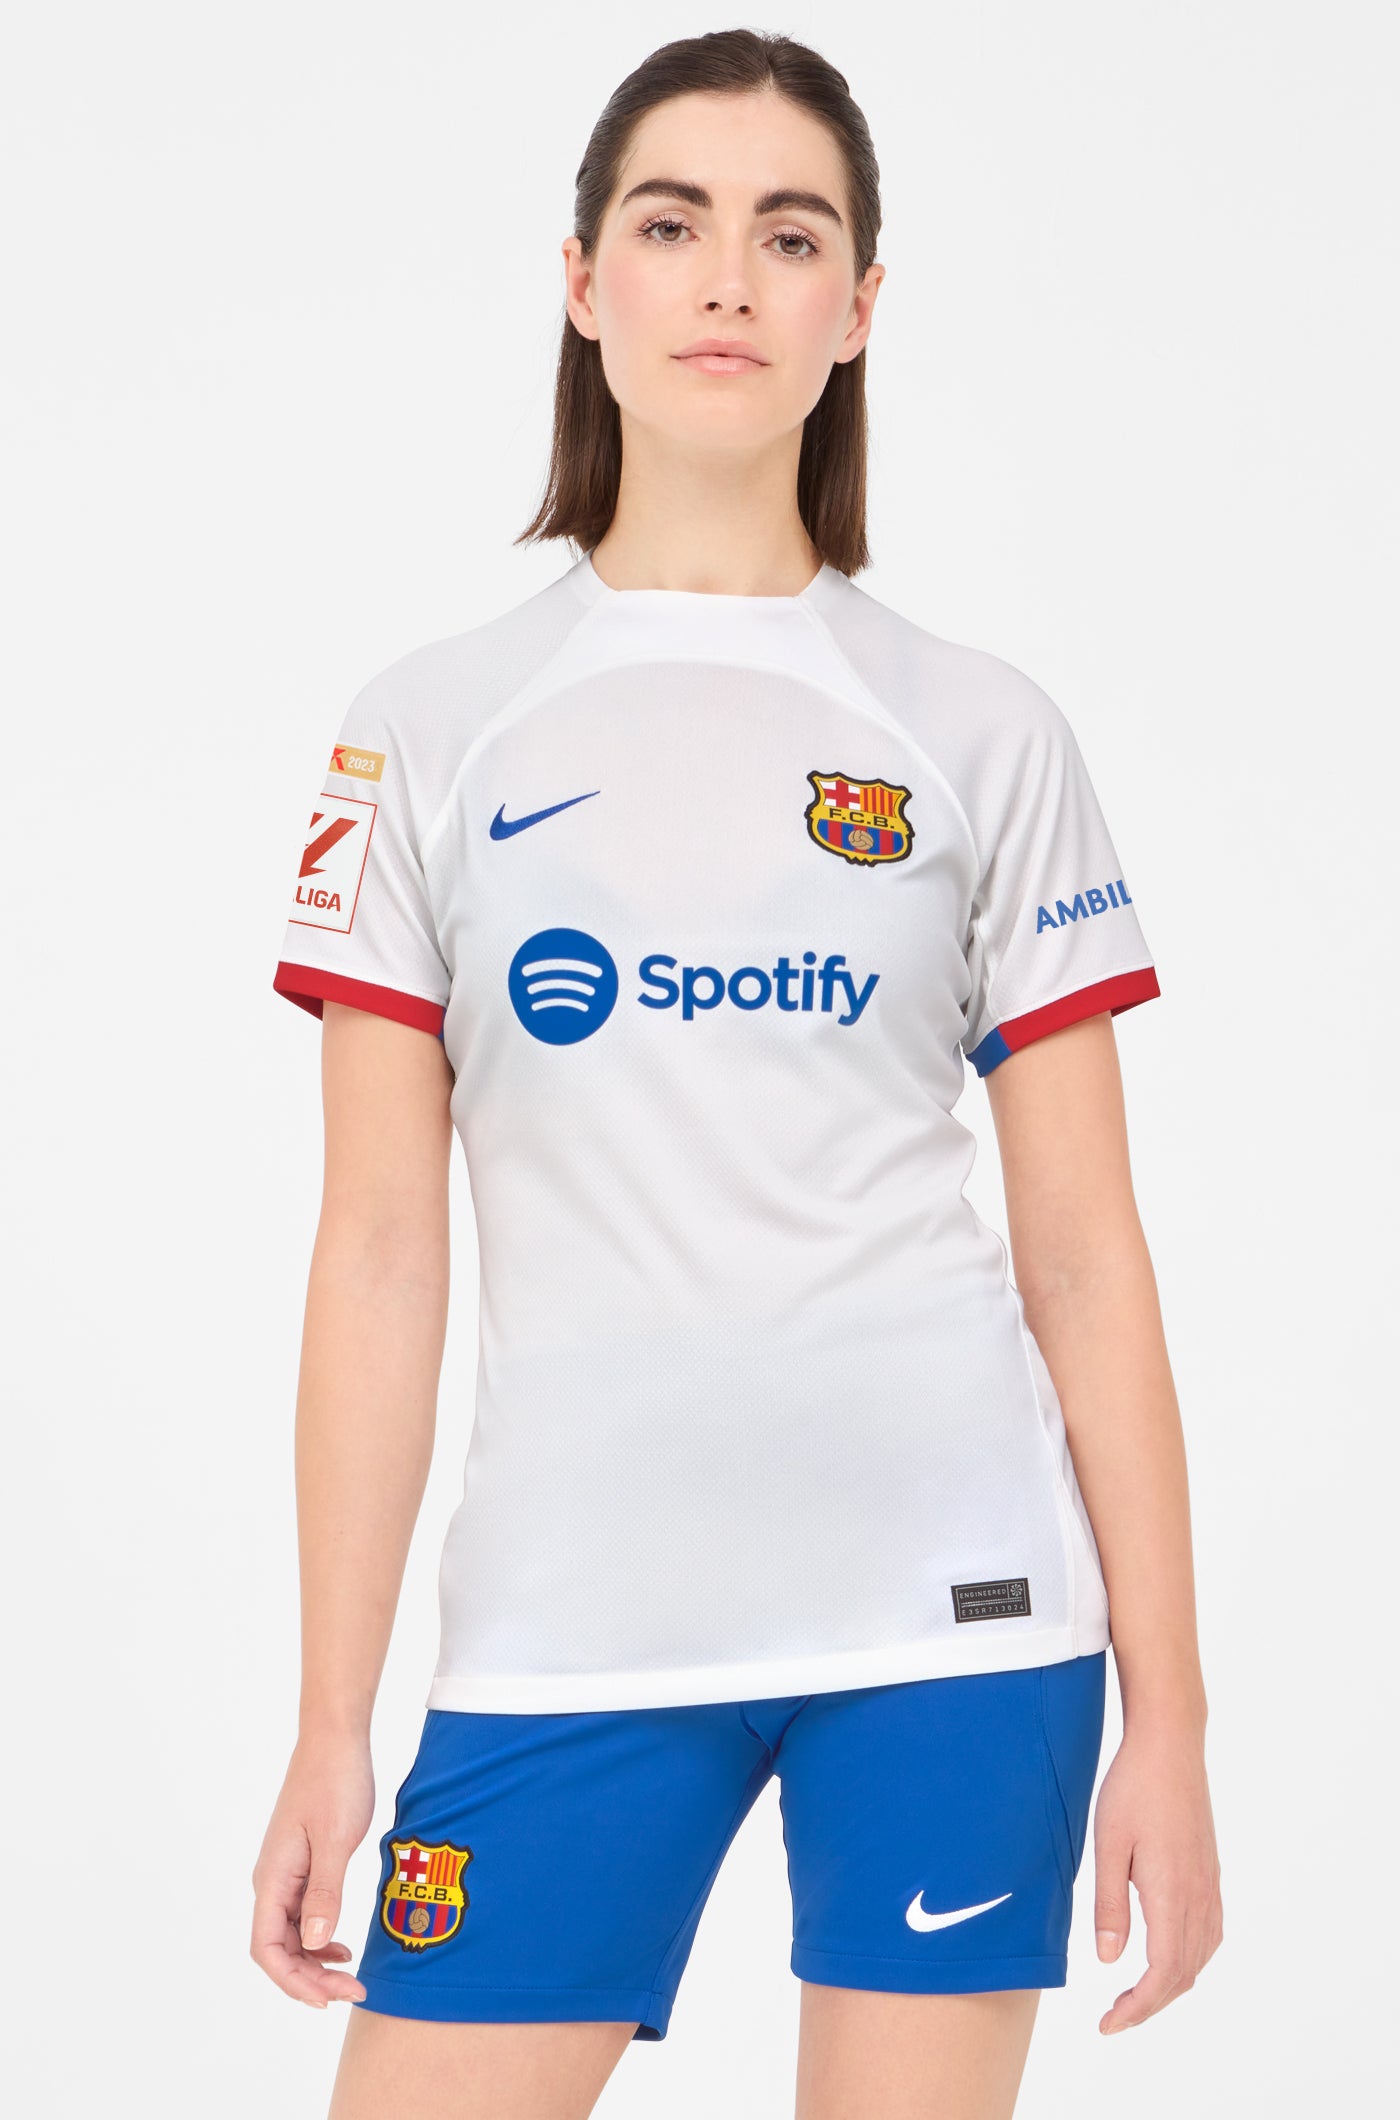 LFP FC Barcelona away shirt 23/24 - Women - MARCOS A.